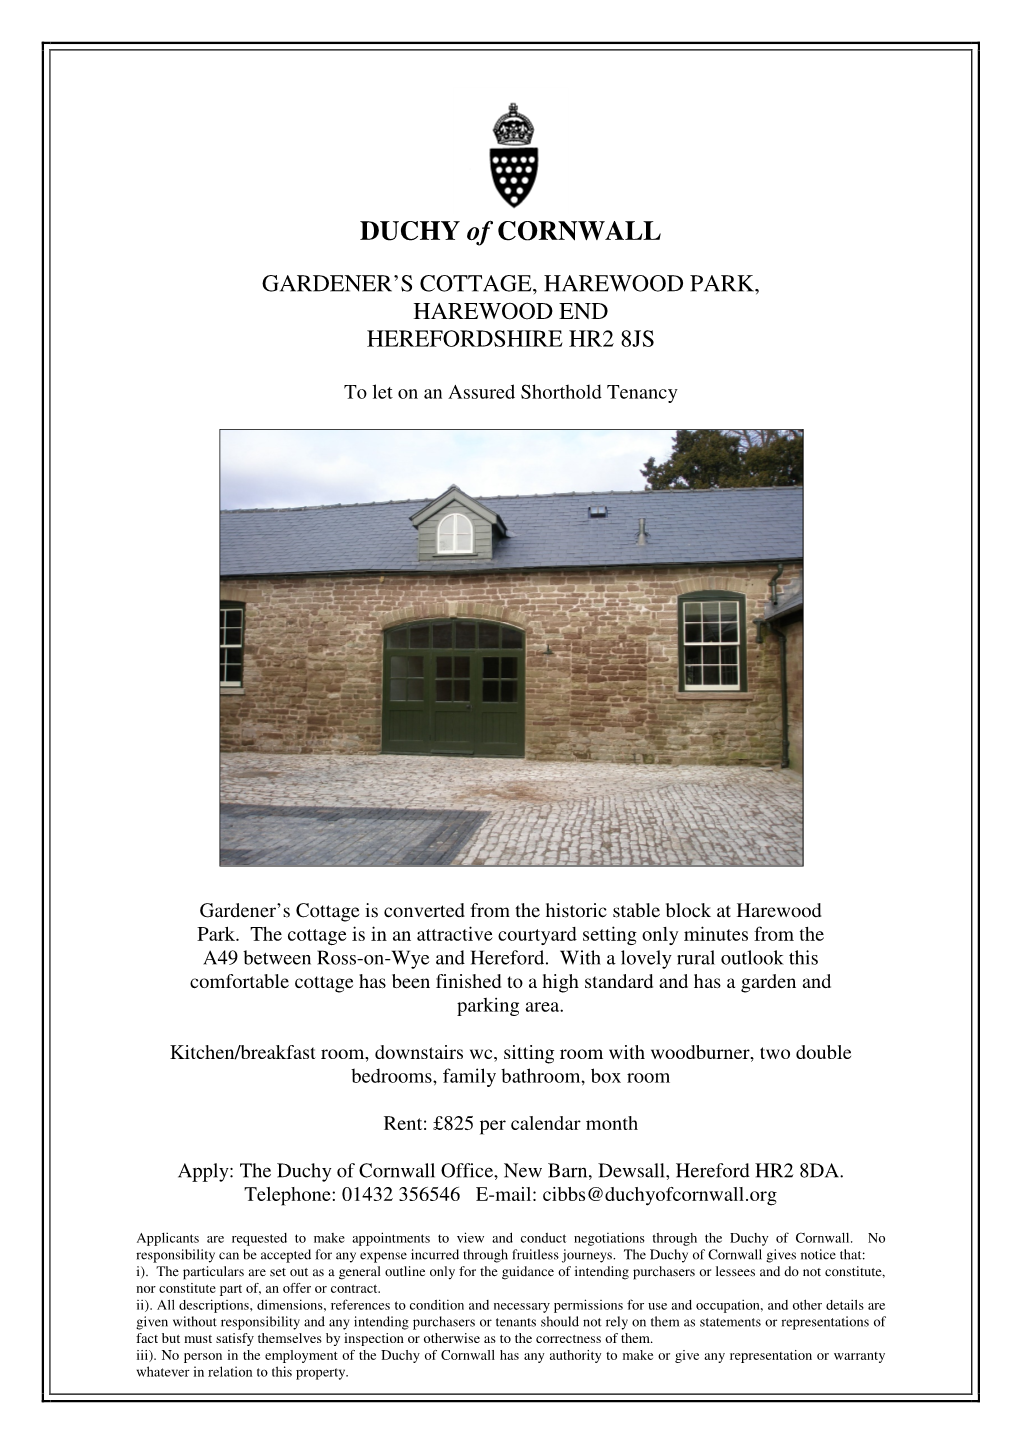 The Duchy of Cornwall Office, New Barn, Dewsall, Hereford HR2 8DA